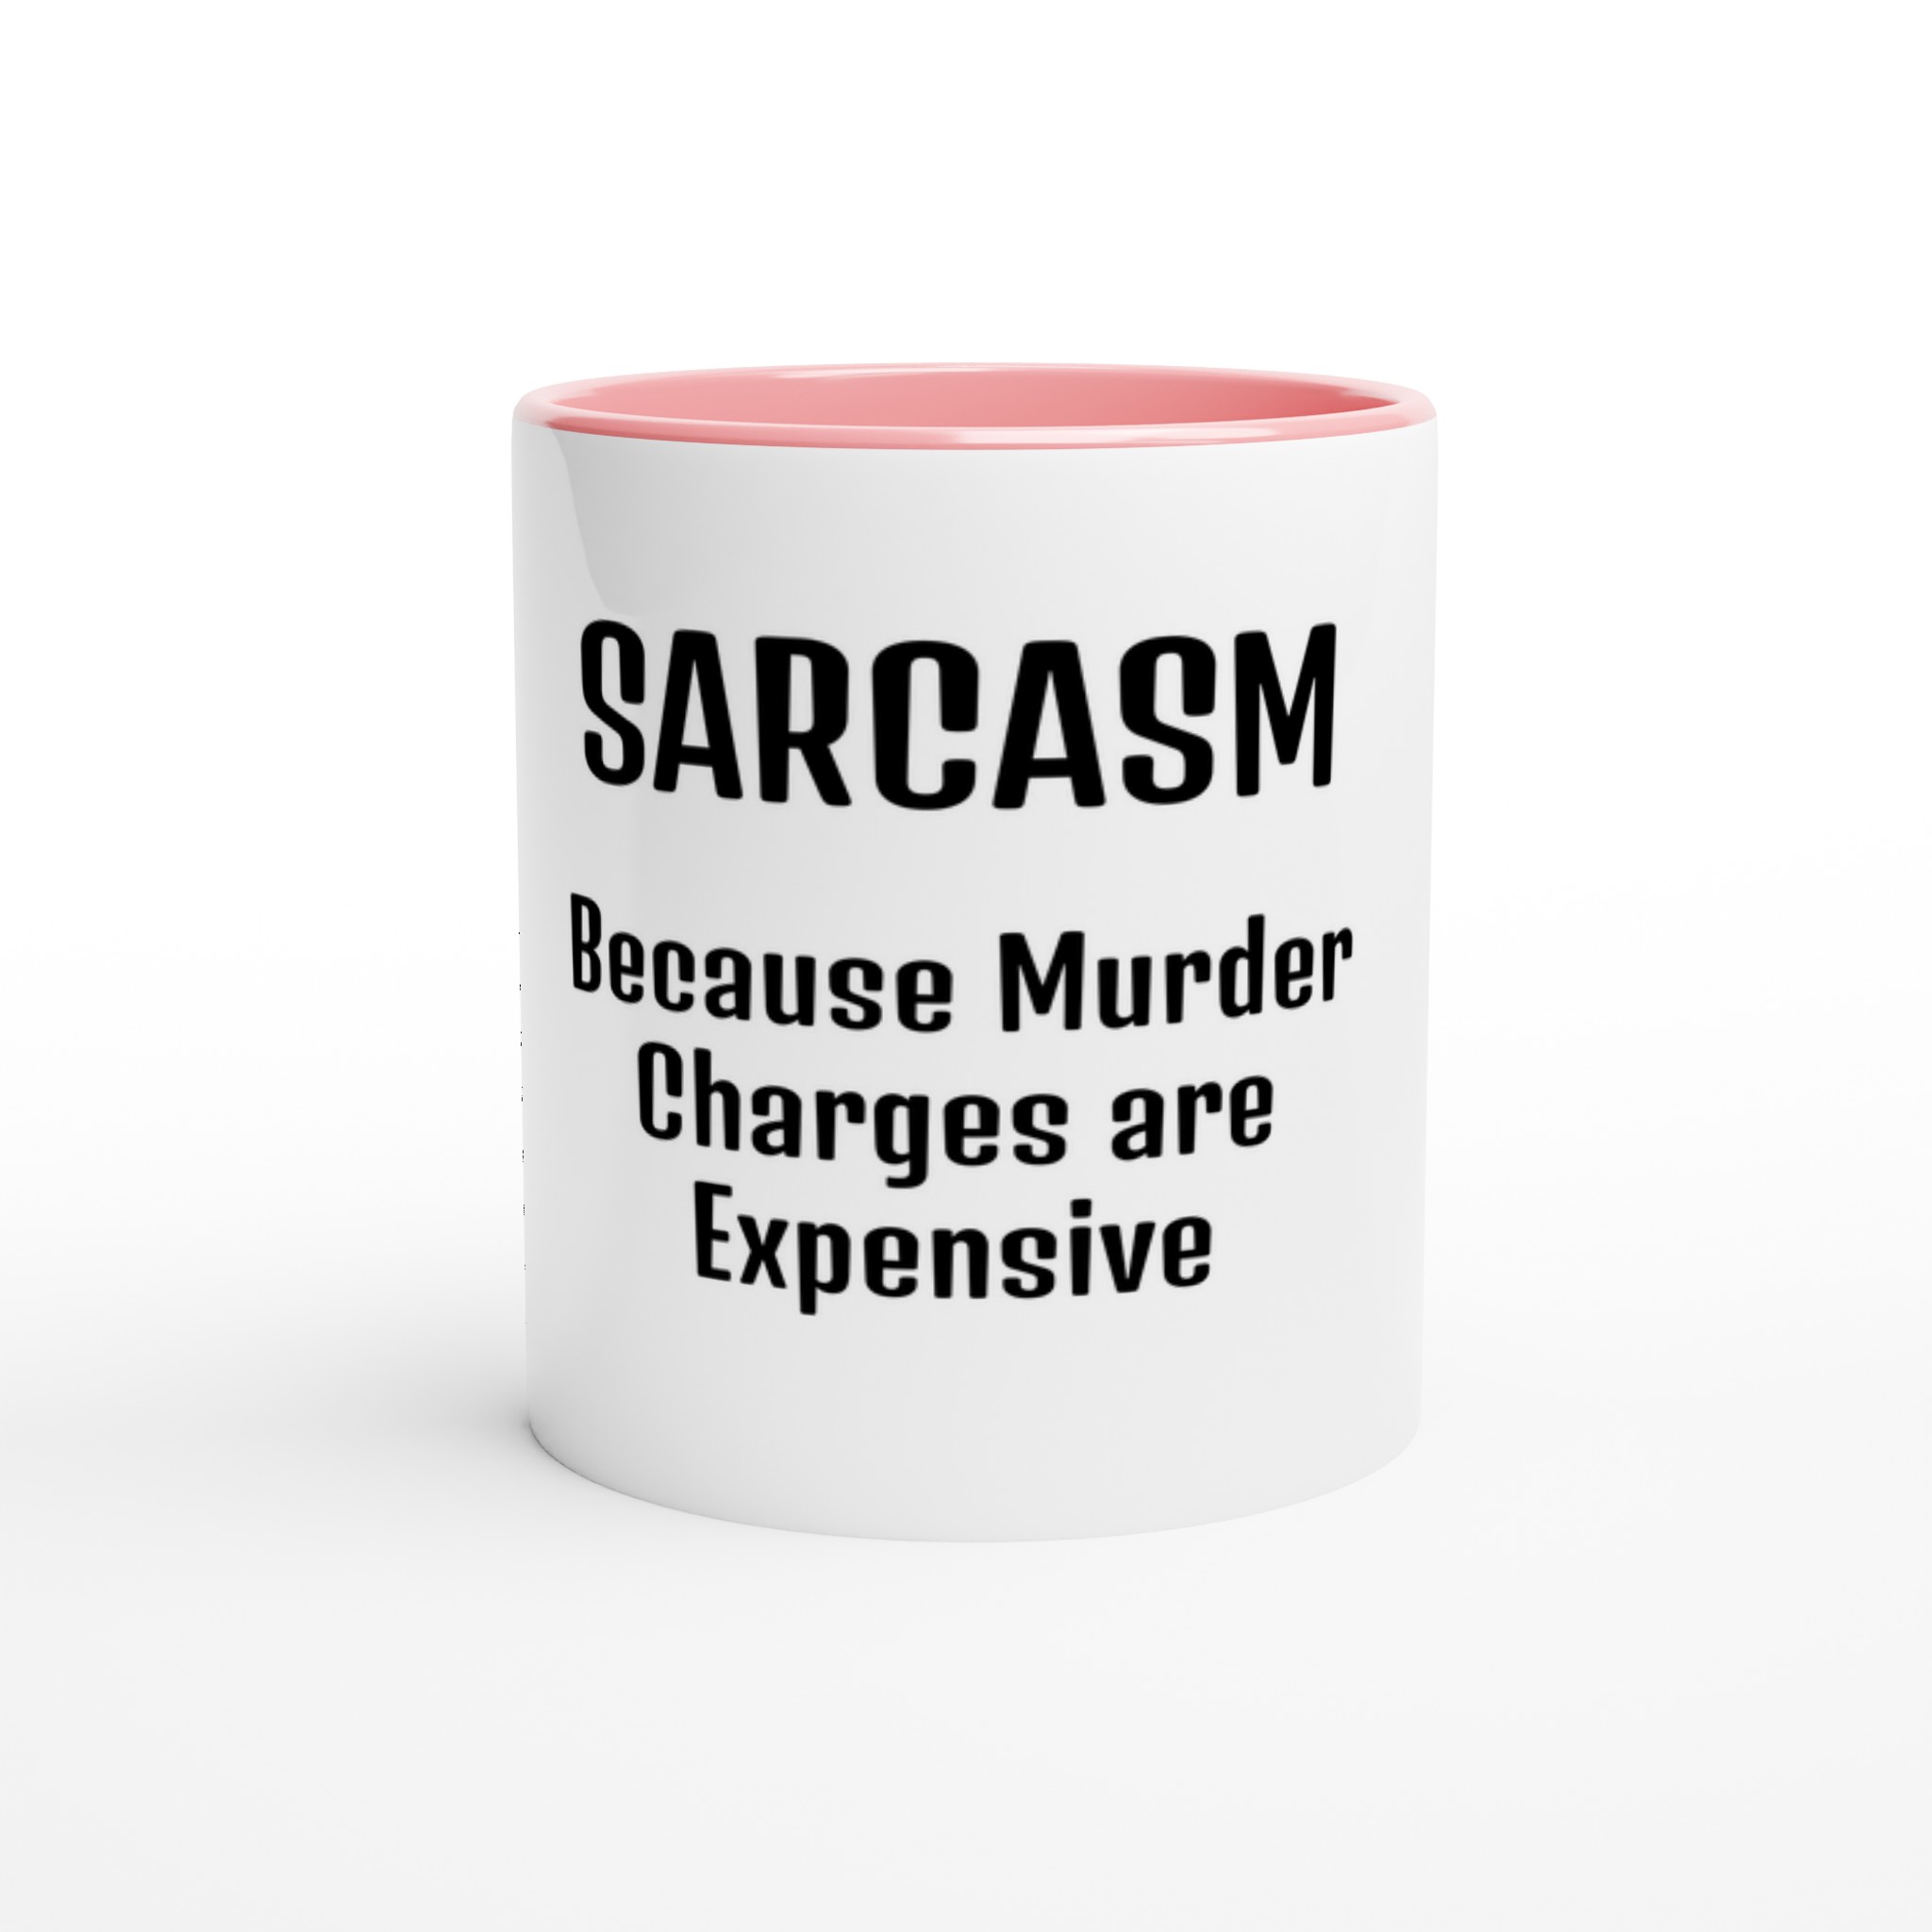 Sarcasm mug pink